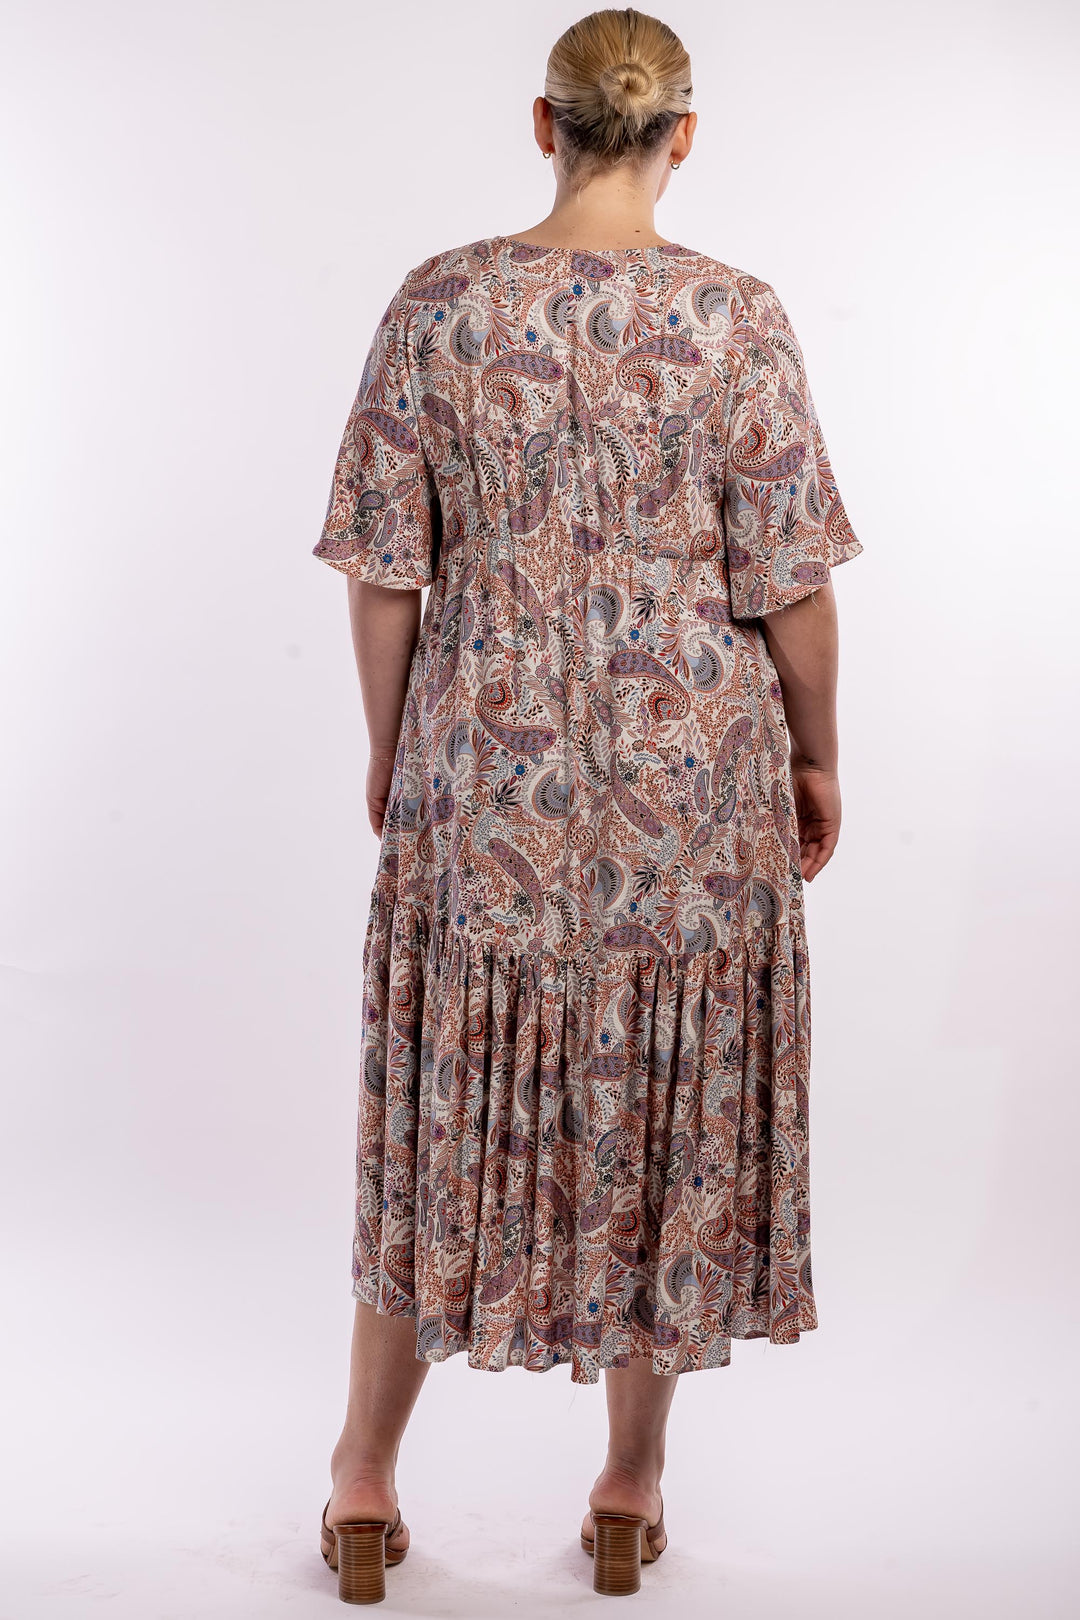 Babooshka Maxi Dress - Paisley - STOCK AVAILABLE - SIZE XS (12/14) and S (14/16)